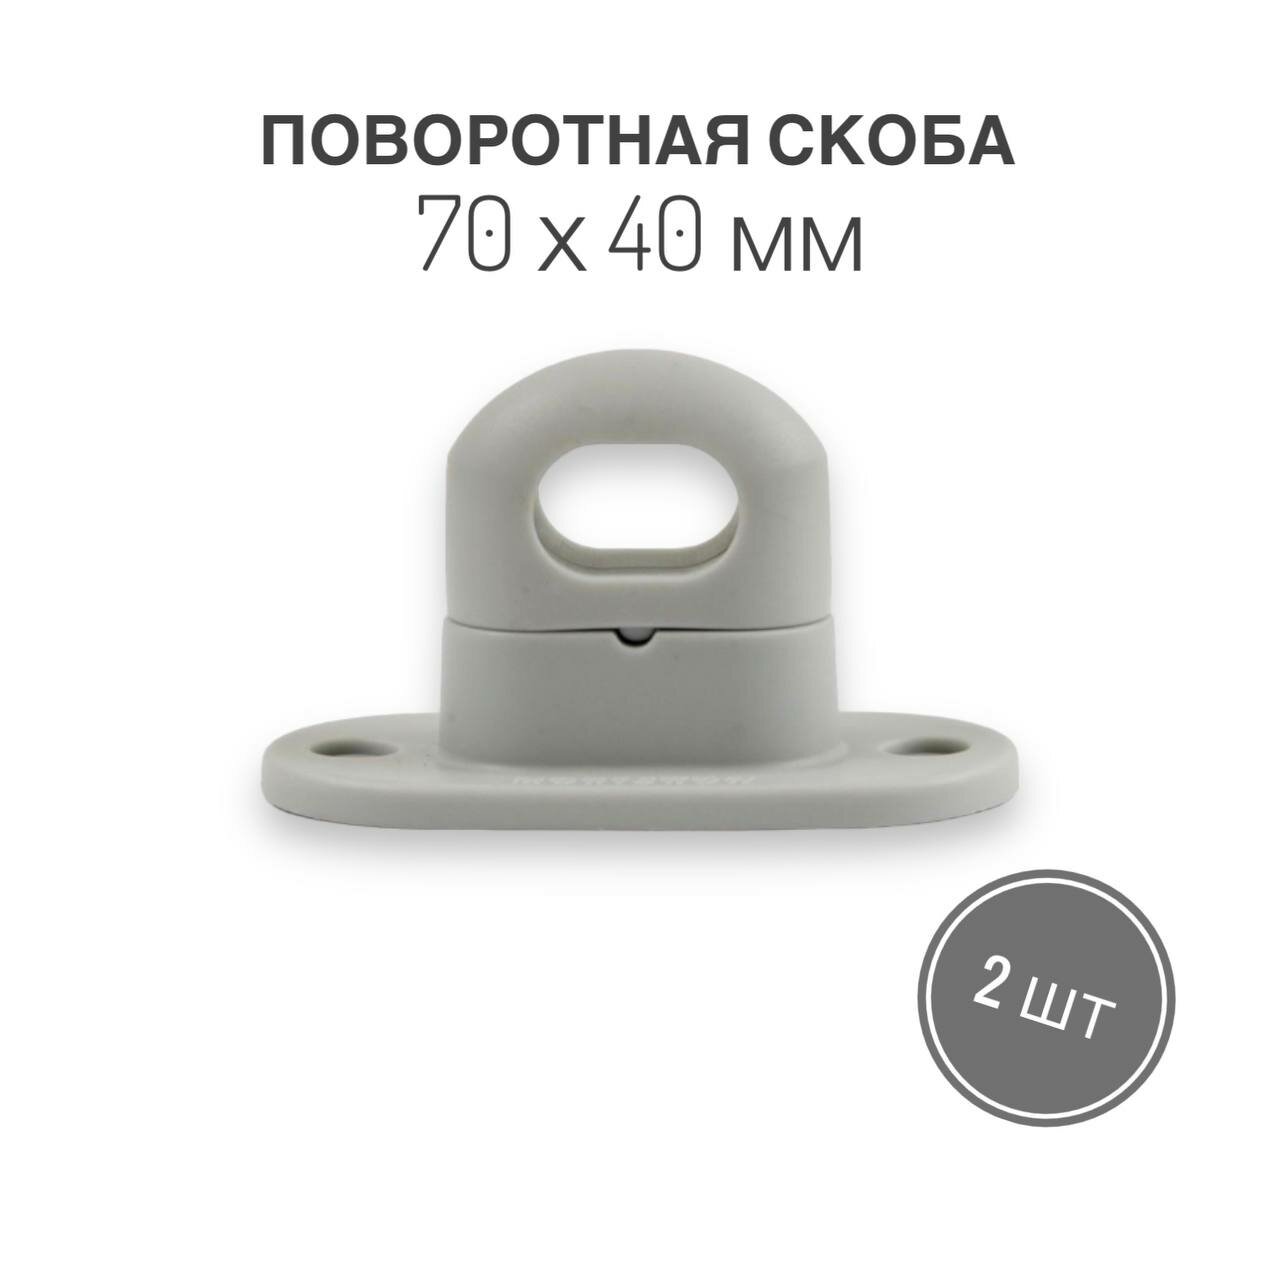 Поворотная скоба (защёлка, поворотный замок) пластиковый 70х40 мм, серый, 2 шт.